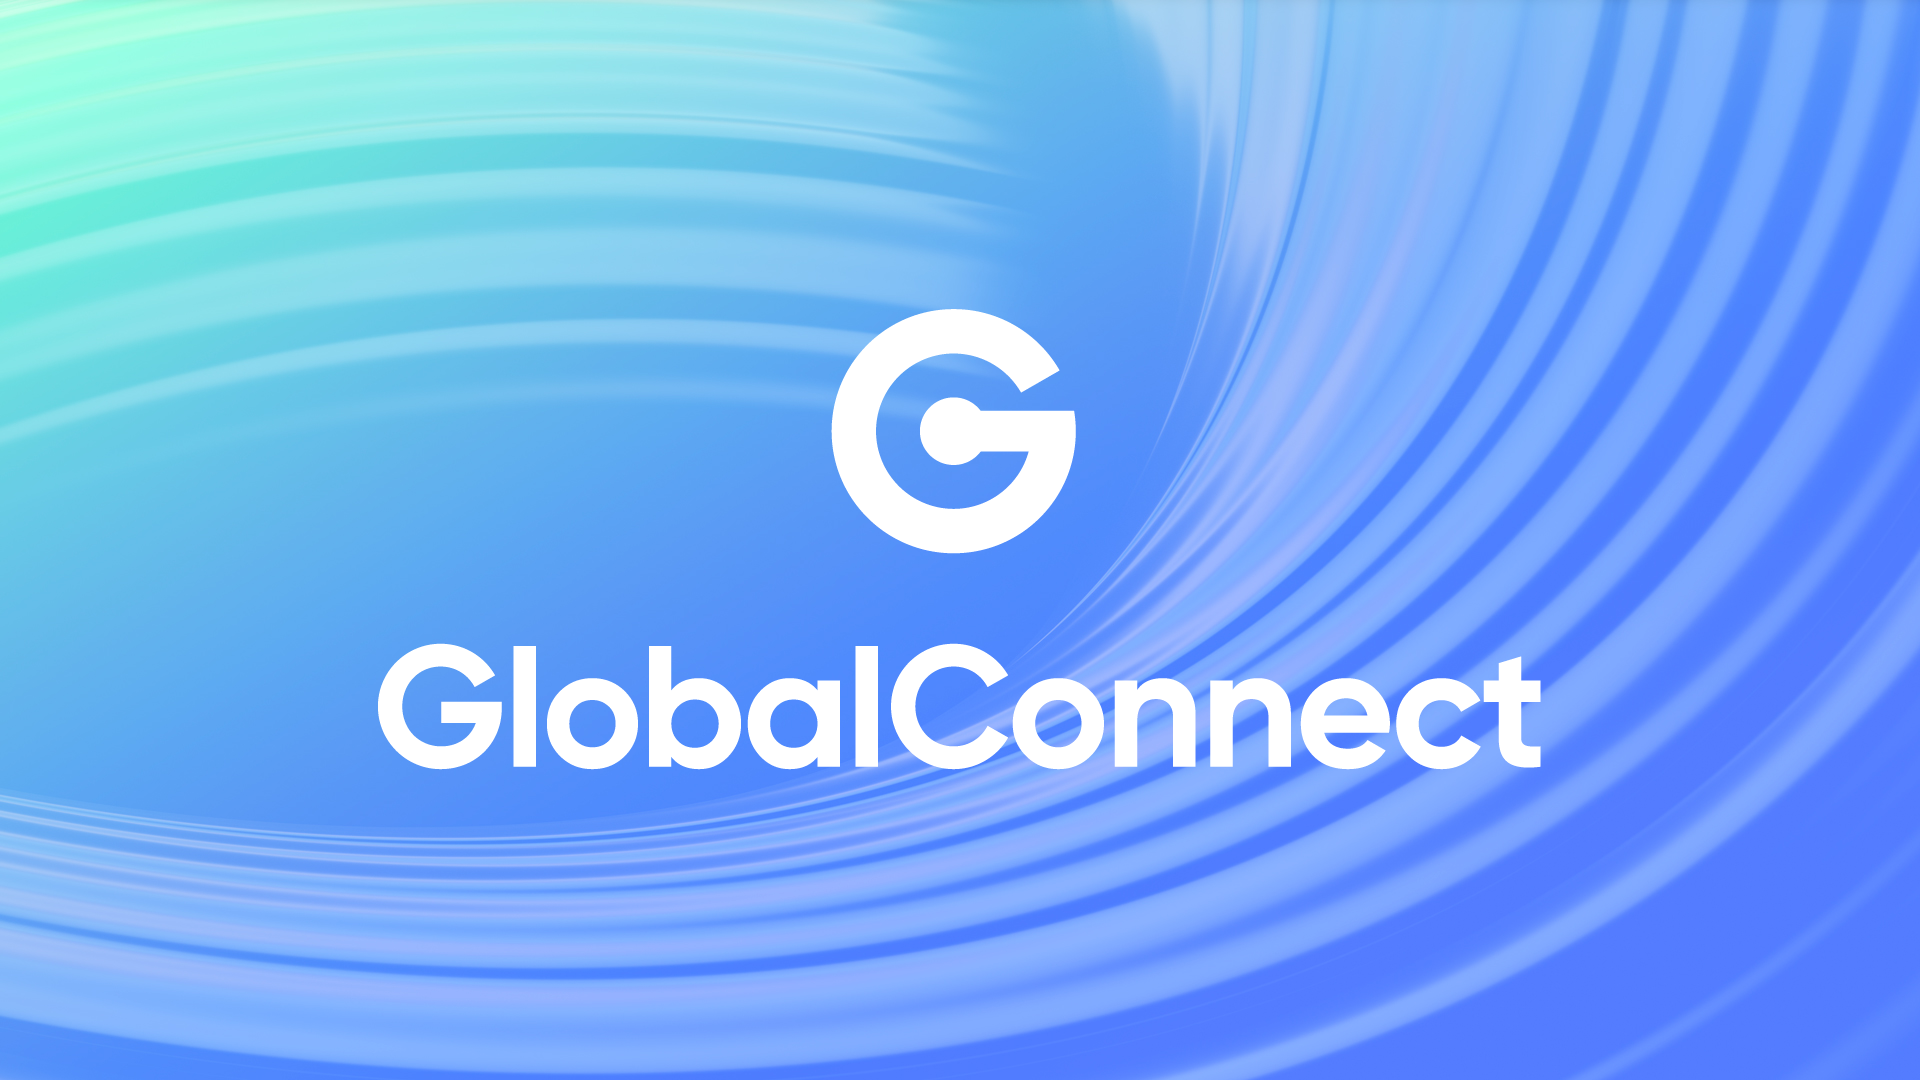 HomeNet, IP-Only und Onefiber werden zu GlobalConnect